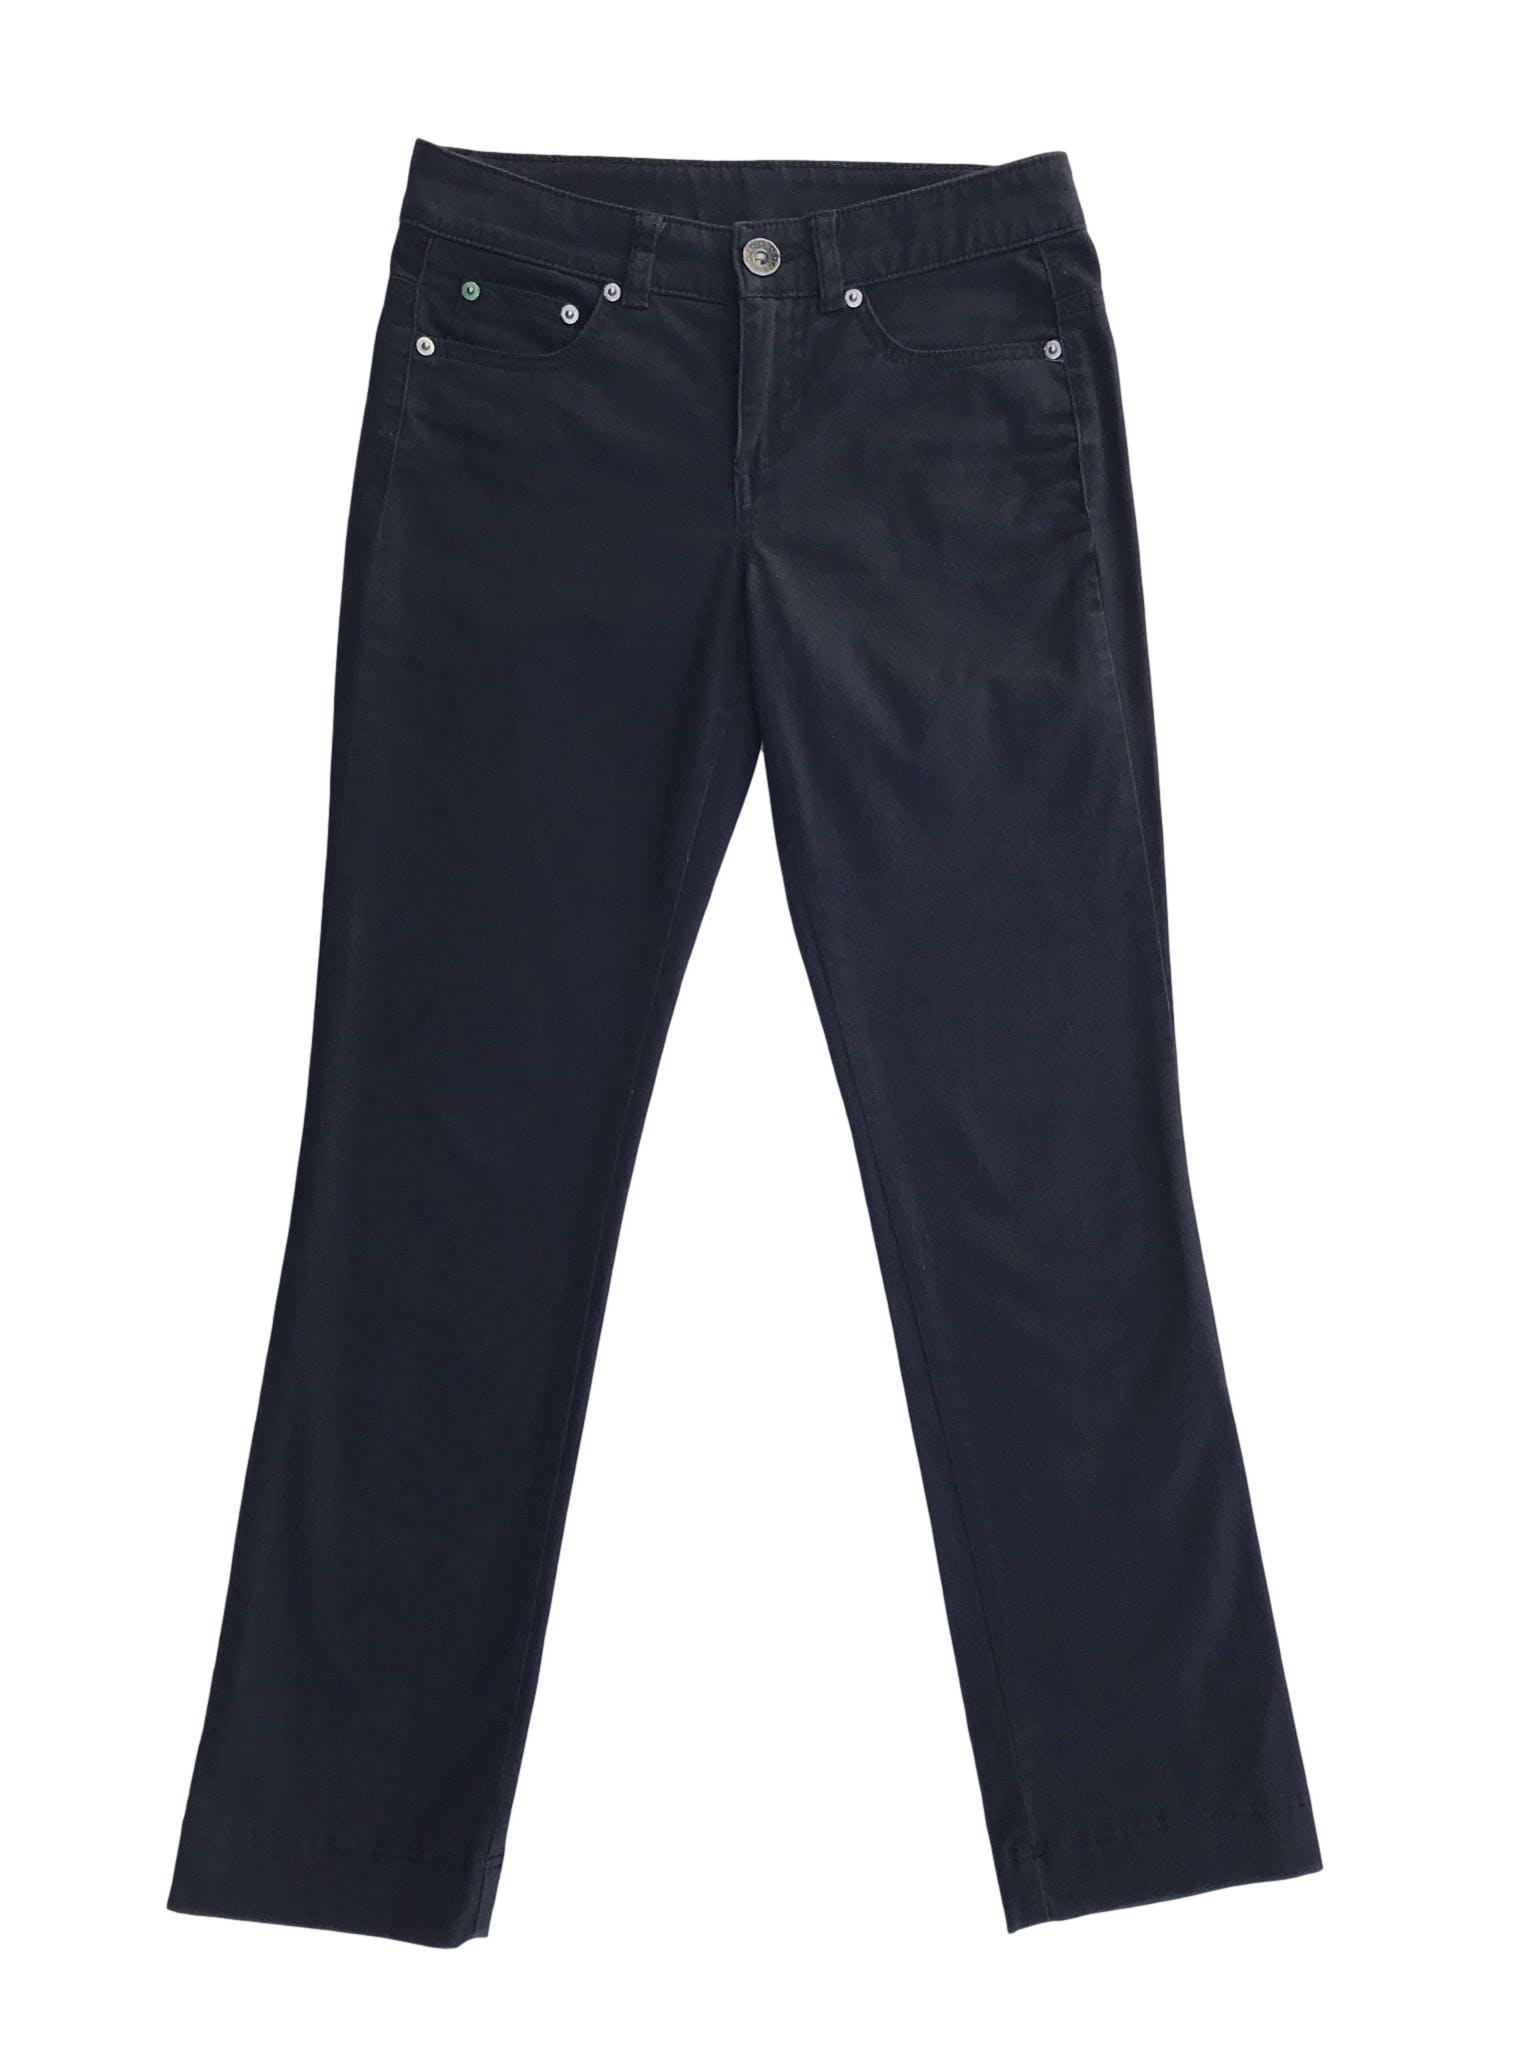 Pantalón Benetton azul 98% algodón ligeramente stretch tipo drill, 5 bolsillos, corte pitillo. Precio original S/ 250
Talla 27